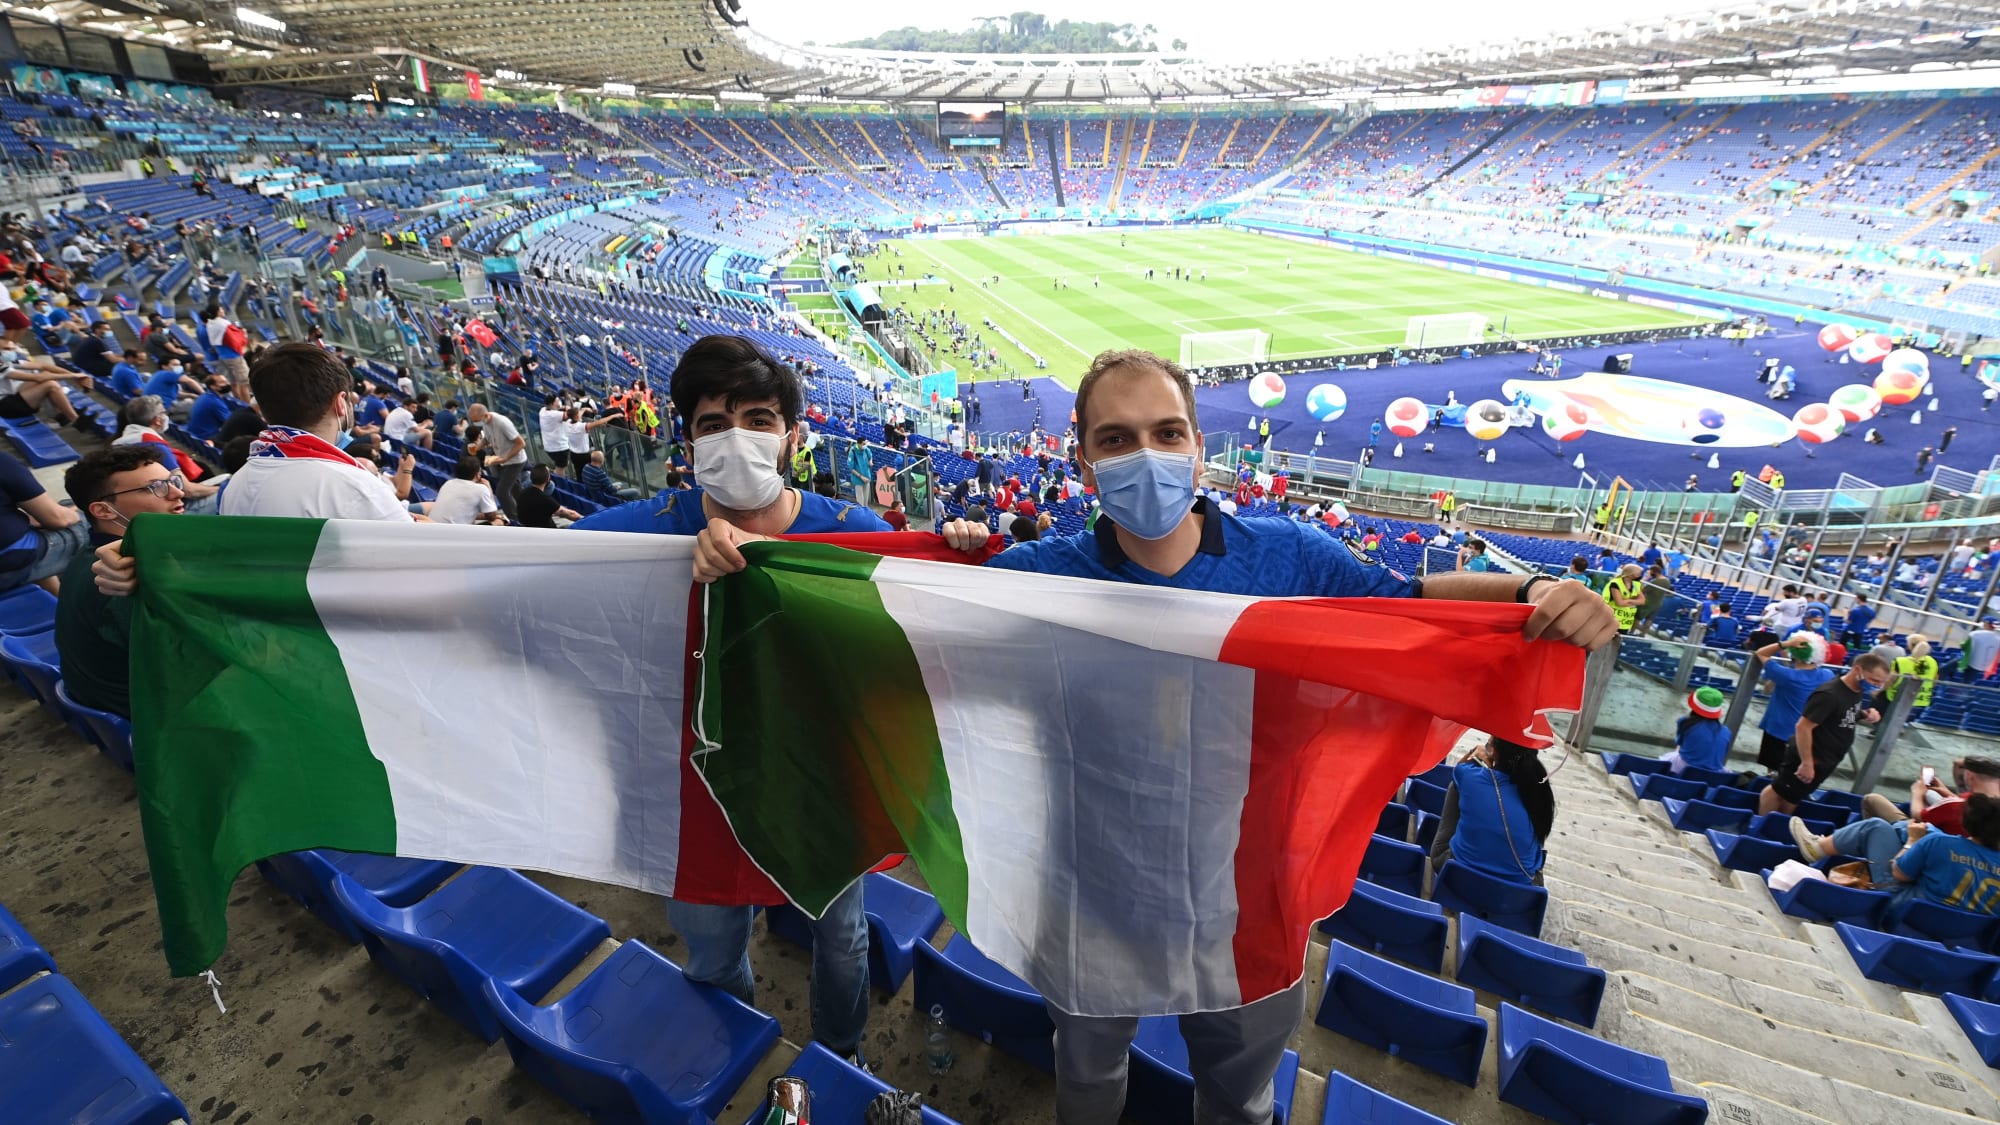 Die EM 2020 wird erst 2021 ausgetragen, der Pandemie geschuldet. Italien gewinnt das Eröffnungsspiel in Rom gegen die Türkei mit 3:0.